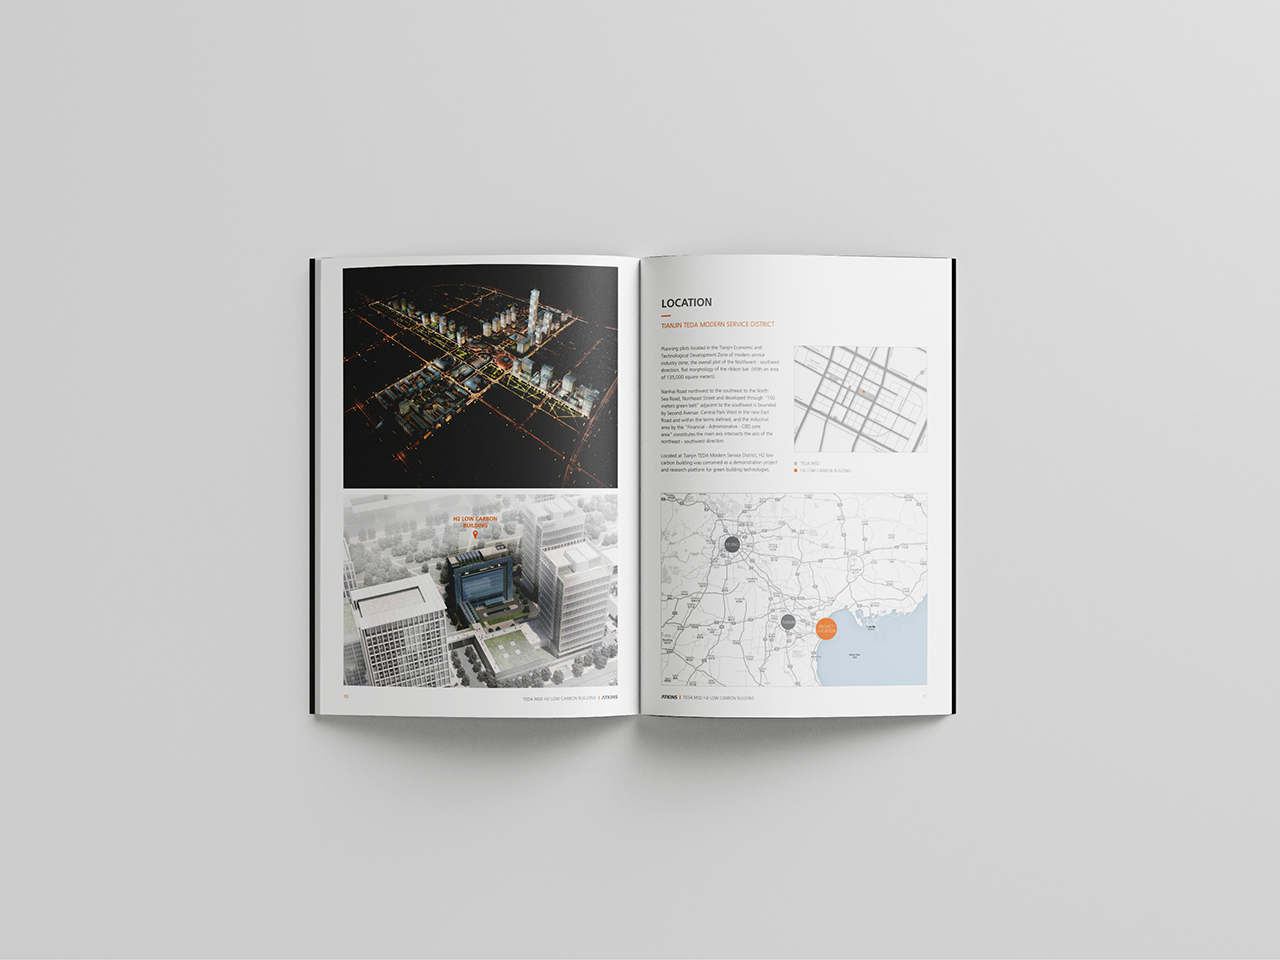 国际建筑品牌 设计竞赛项目宣传册设计图5